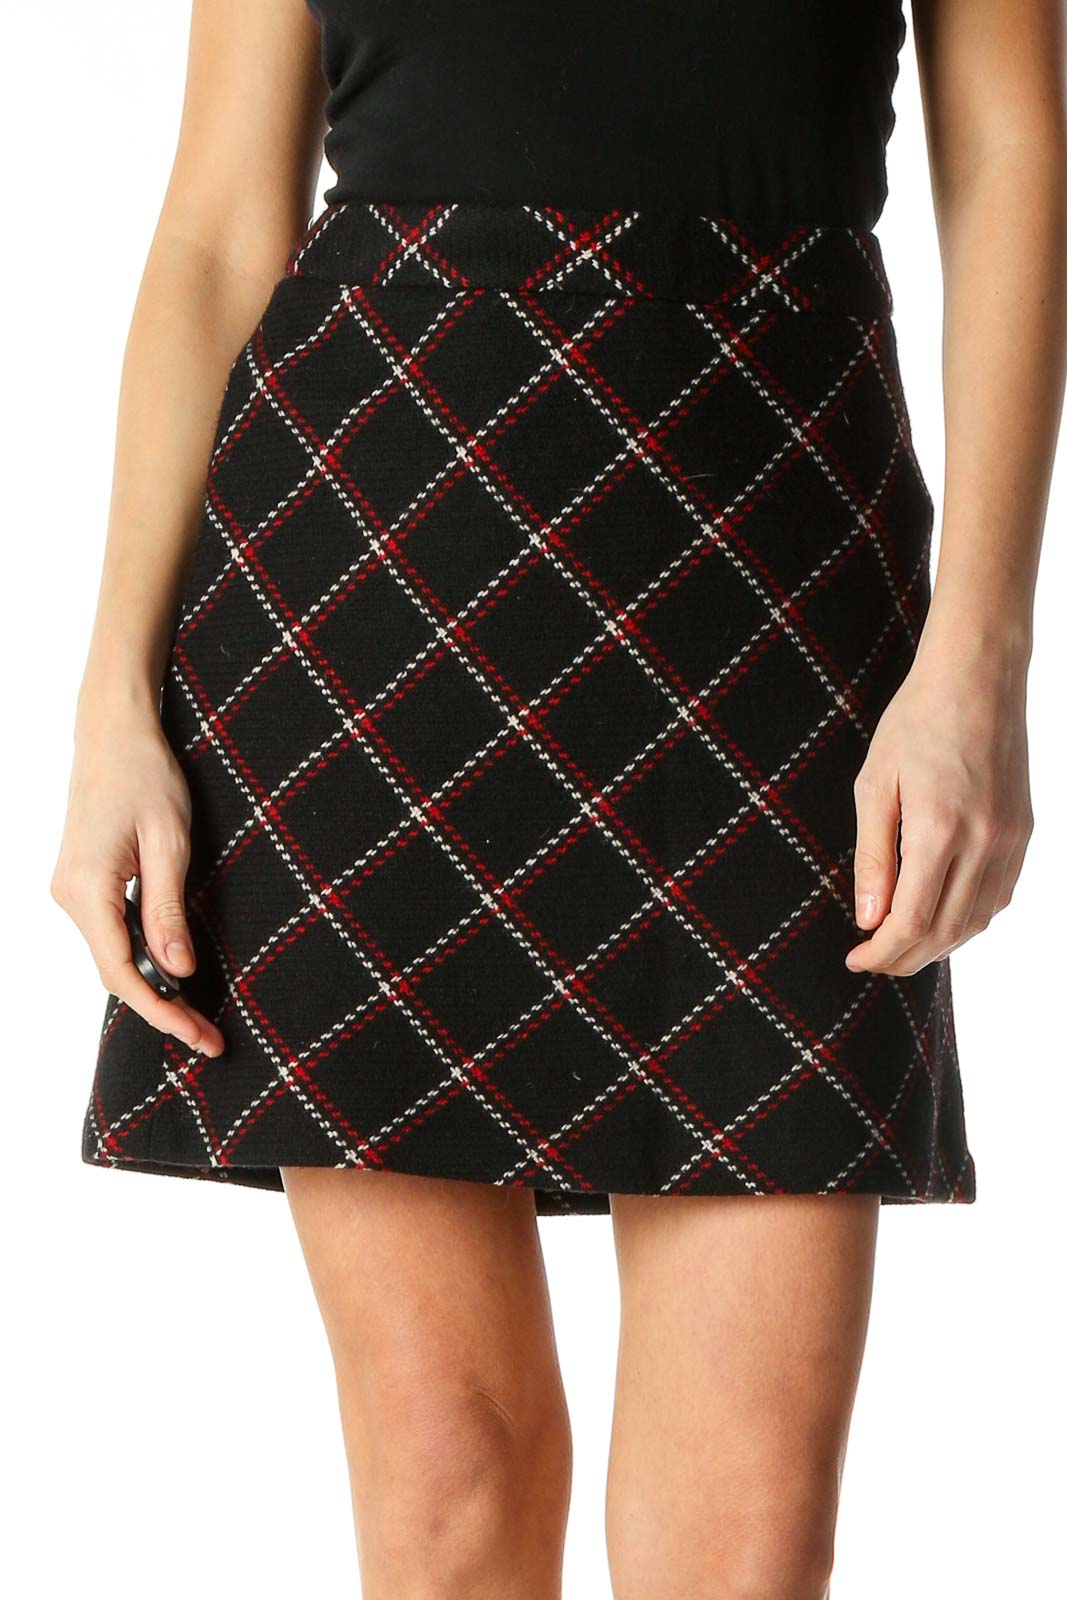 Black Argyle Print Chic Flared Skirt Front